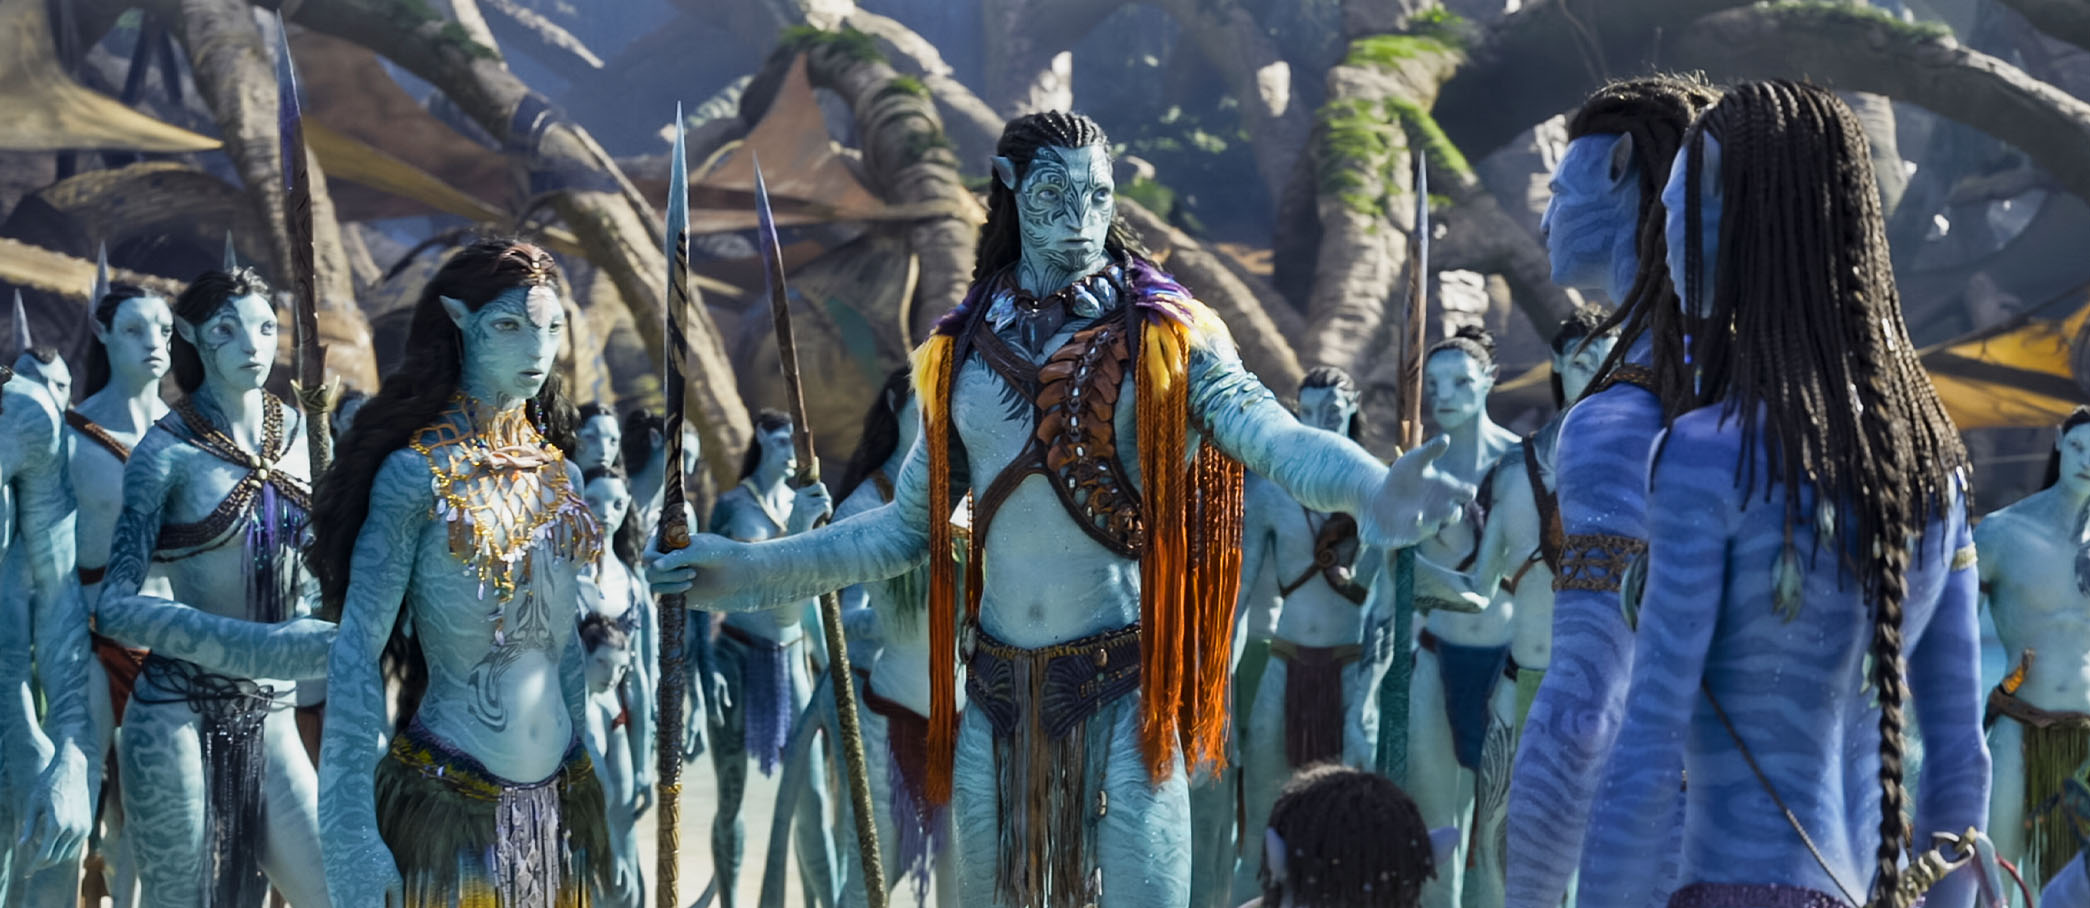 Phần 2 Avatar tiếp tục dẫn đầu nhờ sắp đạt doanh thu 2 tỉ USD trên toàn cầu   Forbes Việt Nam